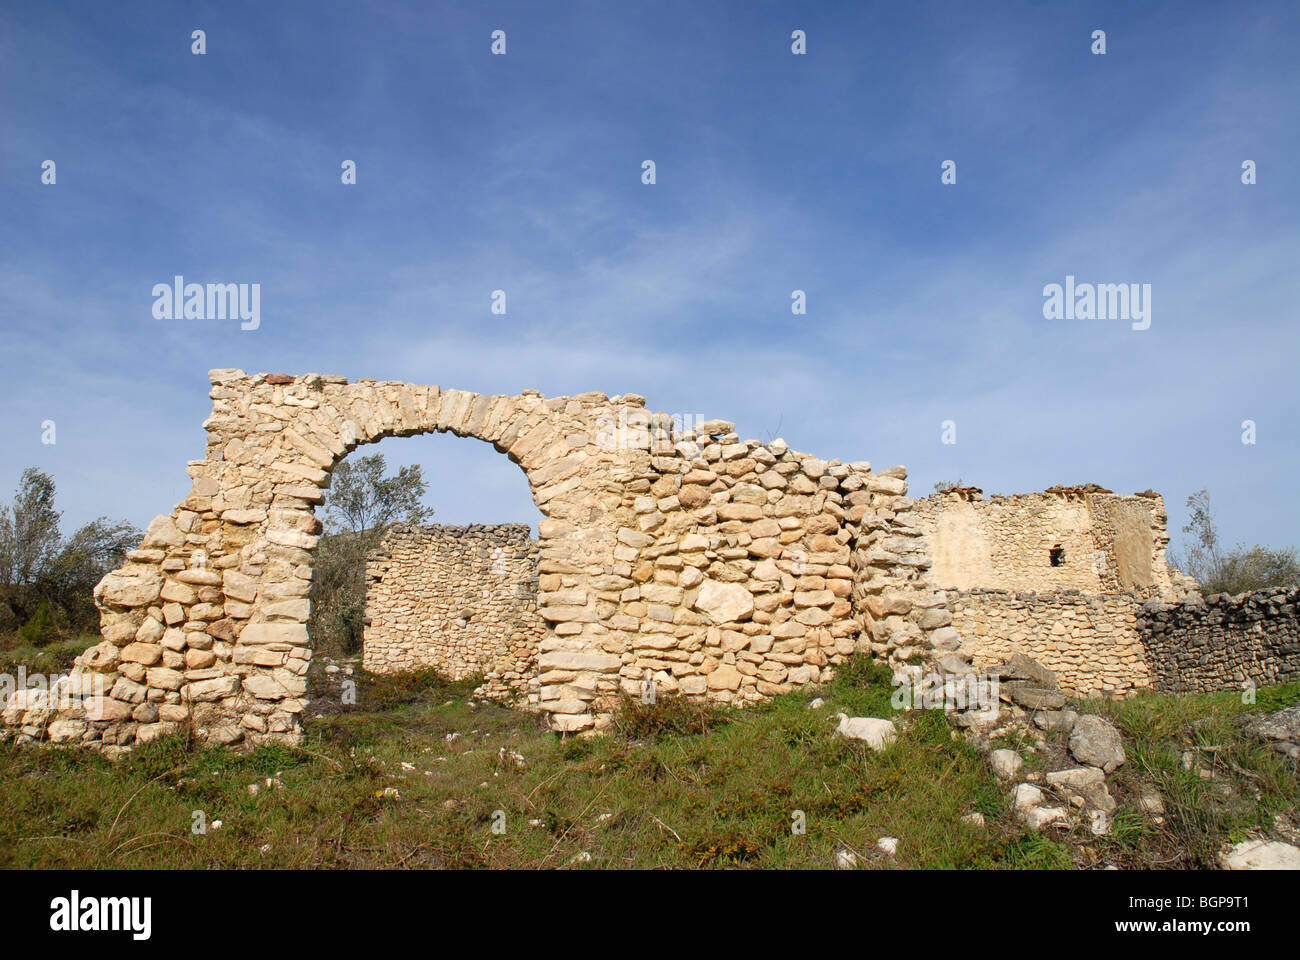 ruined Moorish settlement of La Roca, near Alcala de la Jovada, Vall d'Alcala, Alicante Province, Comunidad Valenciana, Spain Stock Photo